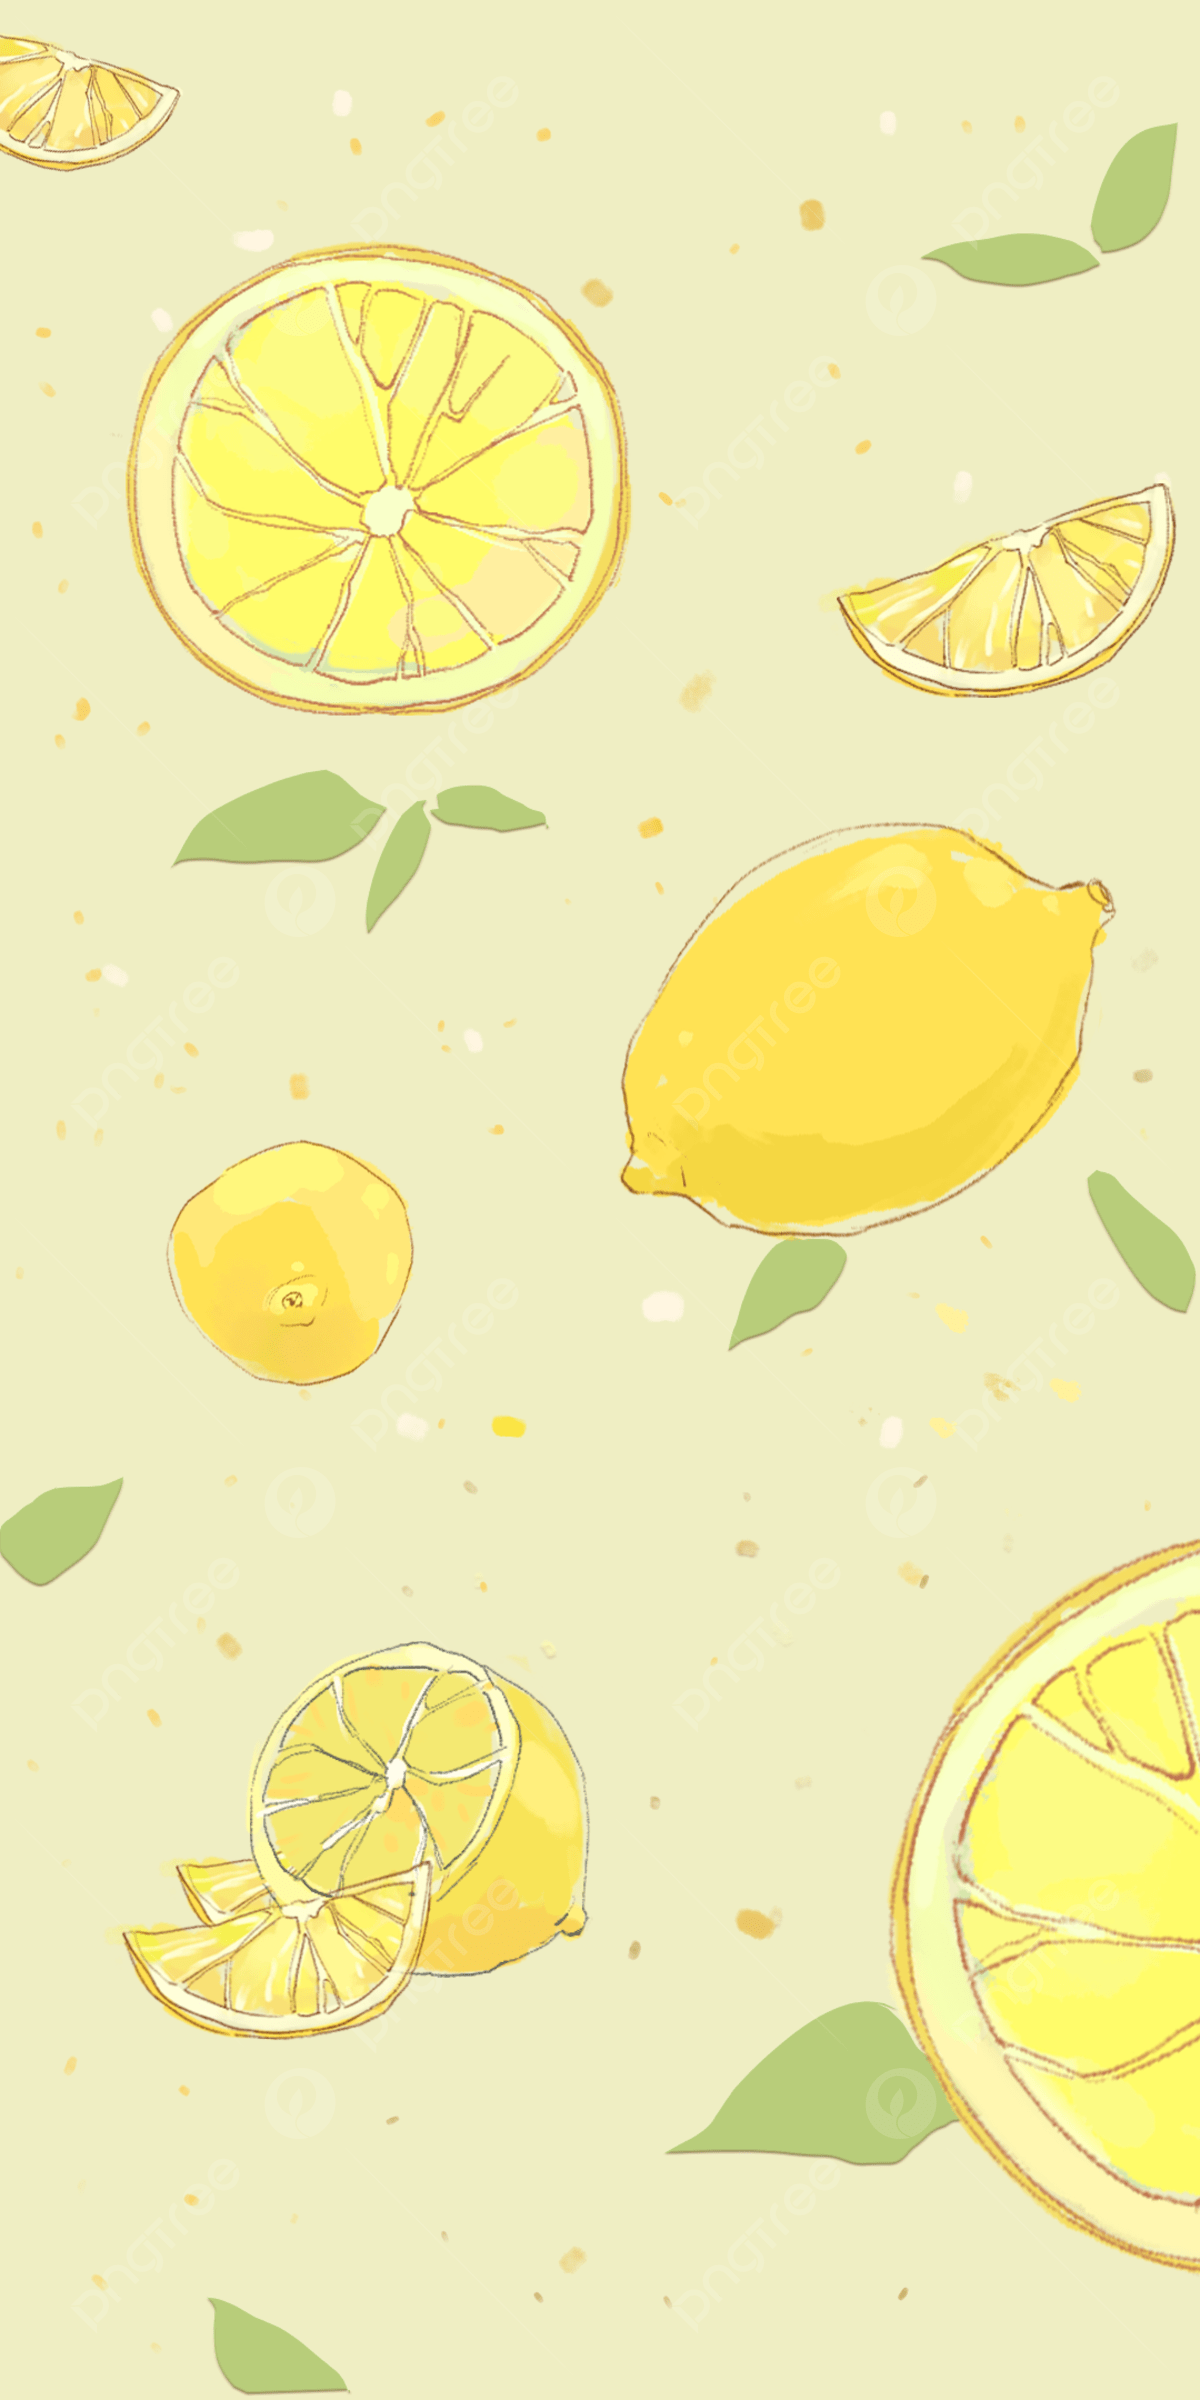 Cute Lemon Watercolor Mobile Wallpaper Background, Lemon, Phone Wallpaper, Fruit Background Image for Free Download